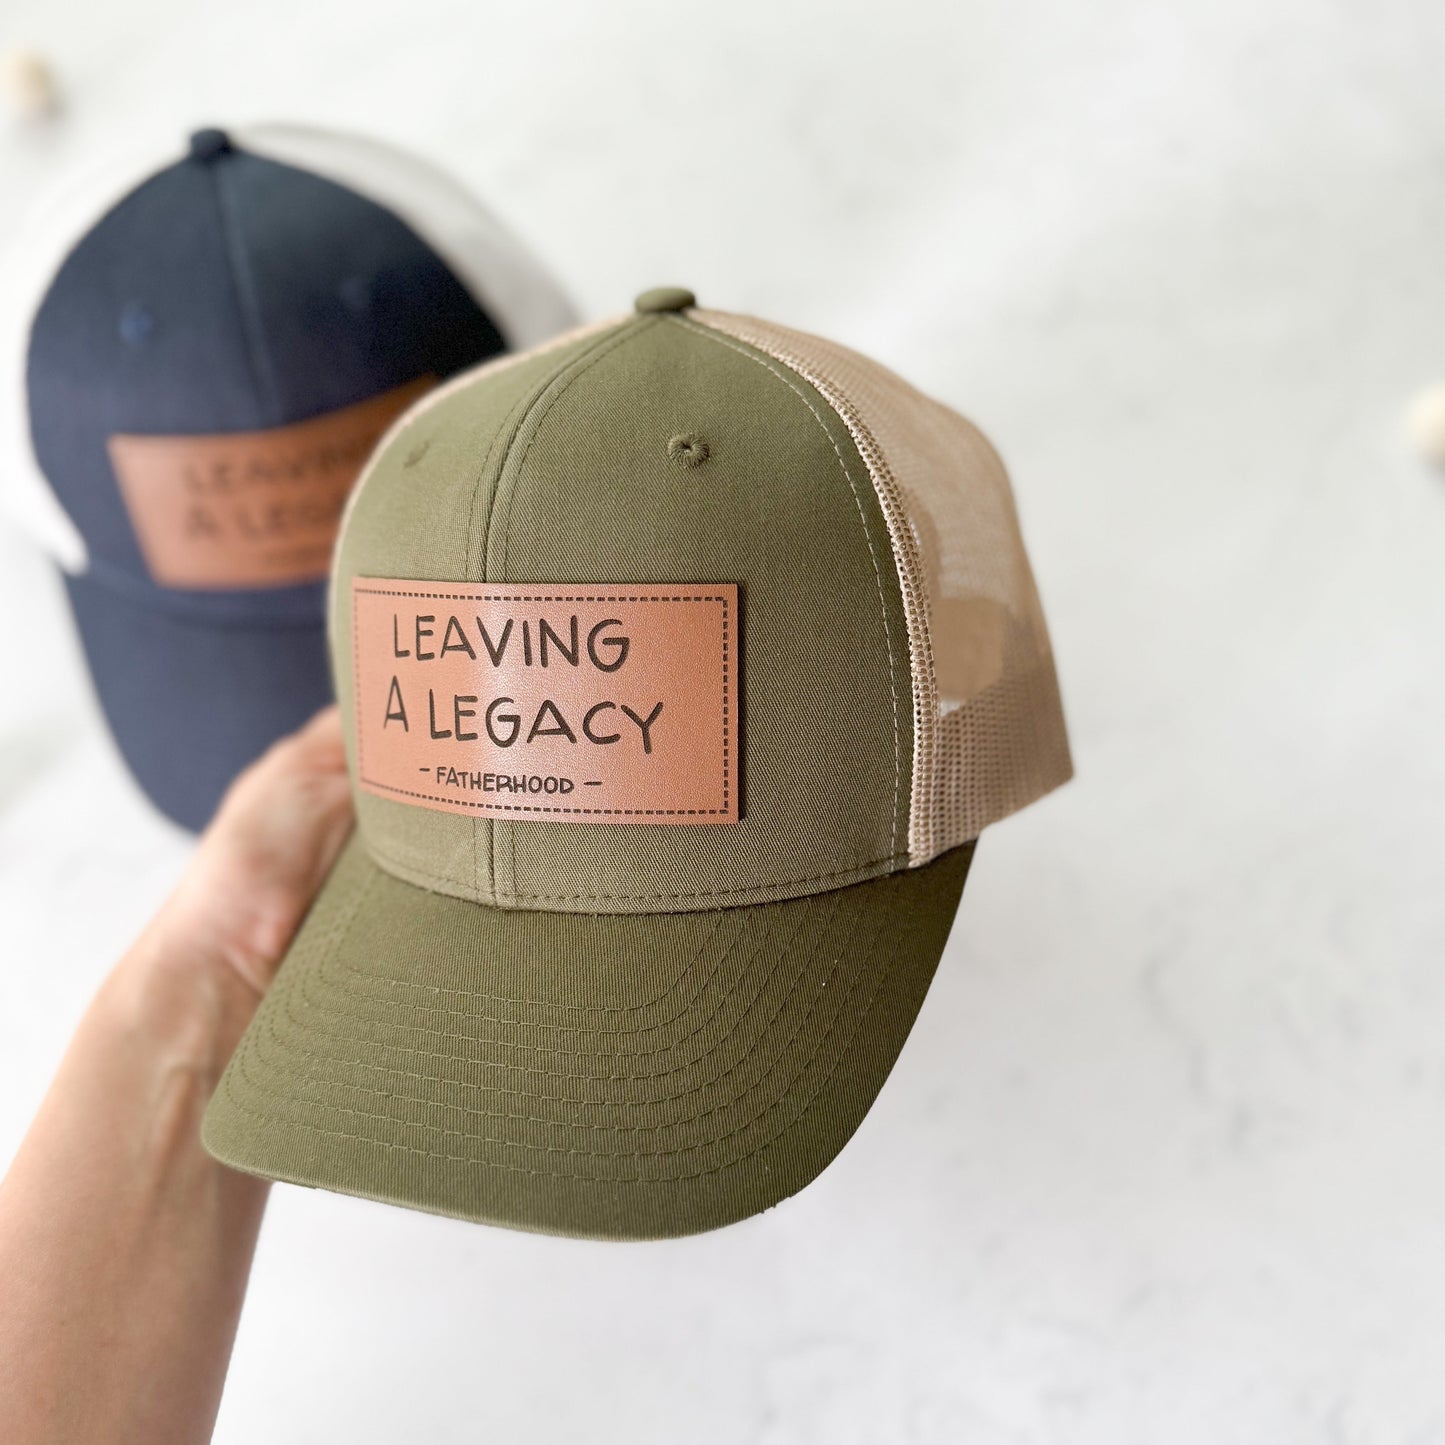 Leaving a Legacy | Moss Trucker Hat